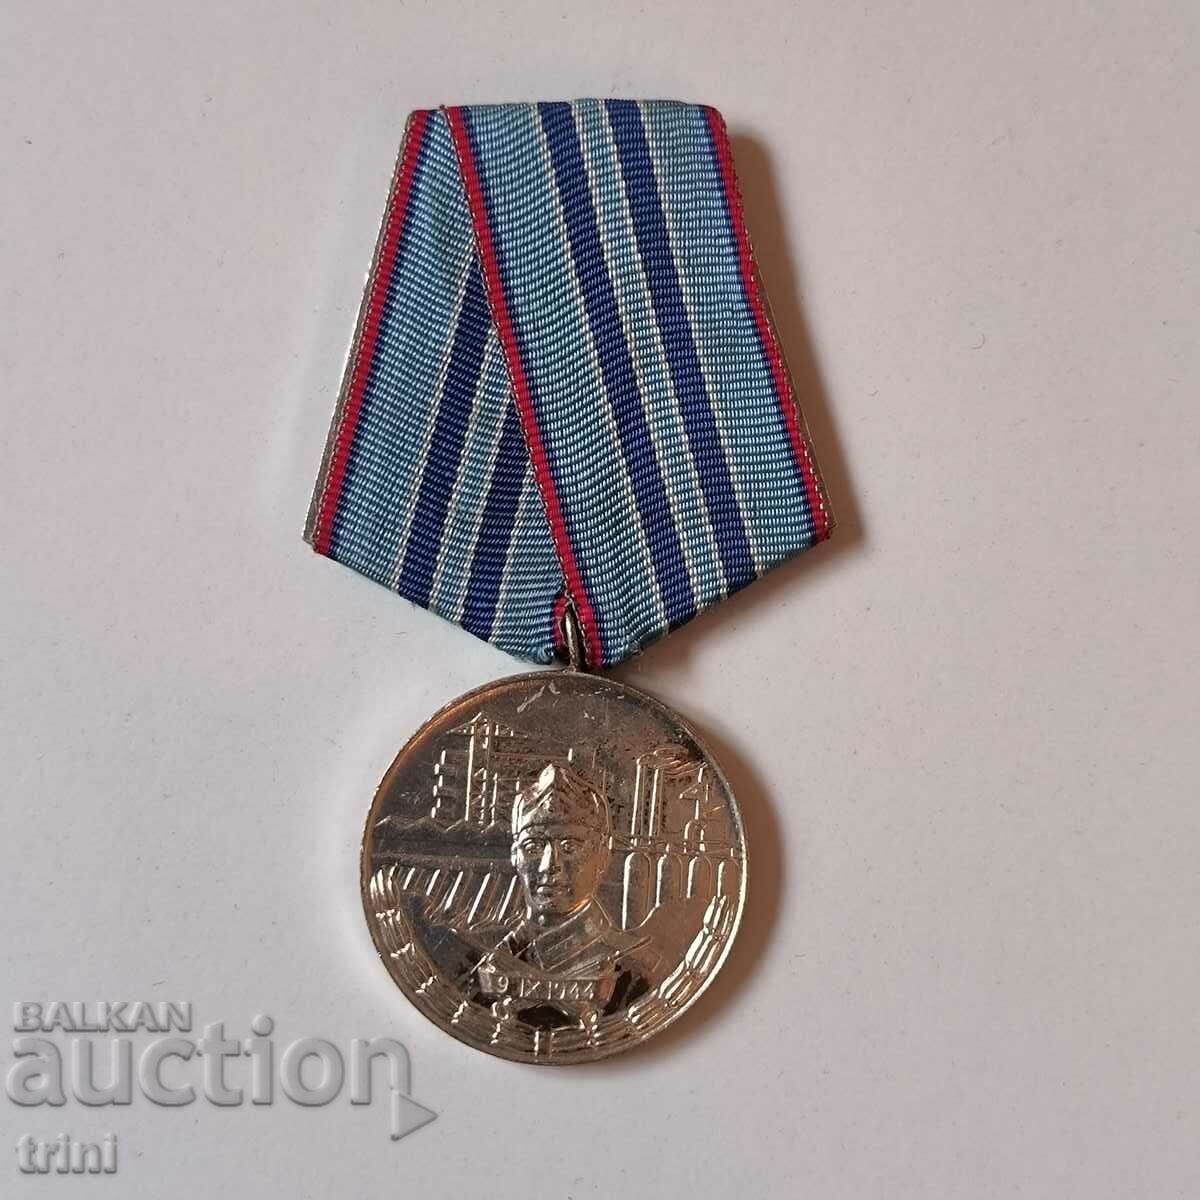 Μετάλλιο για 15 χρόνια άψογης υπηρεσίας Κατασκευαστικά στρατεύματα NRB